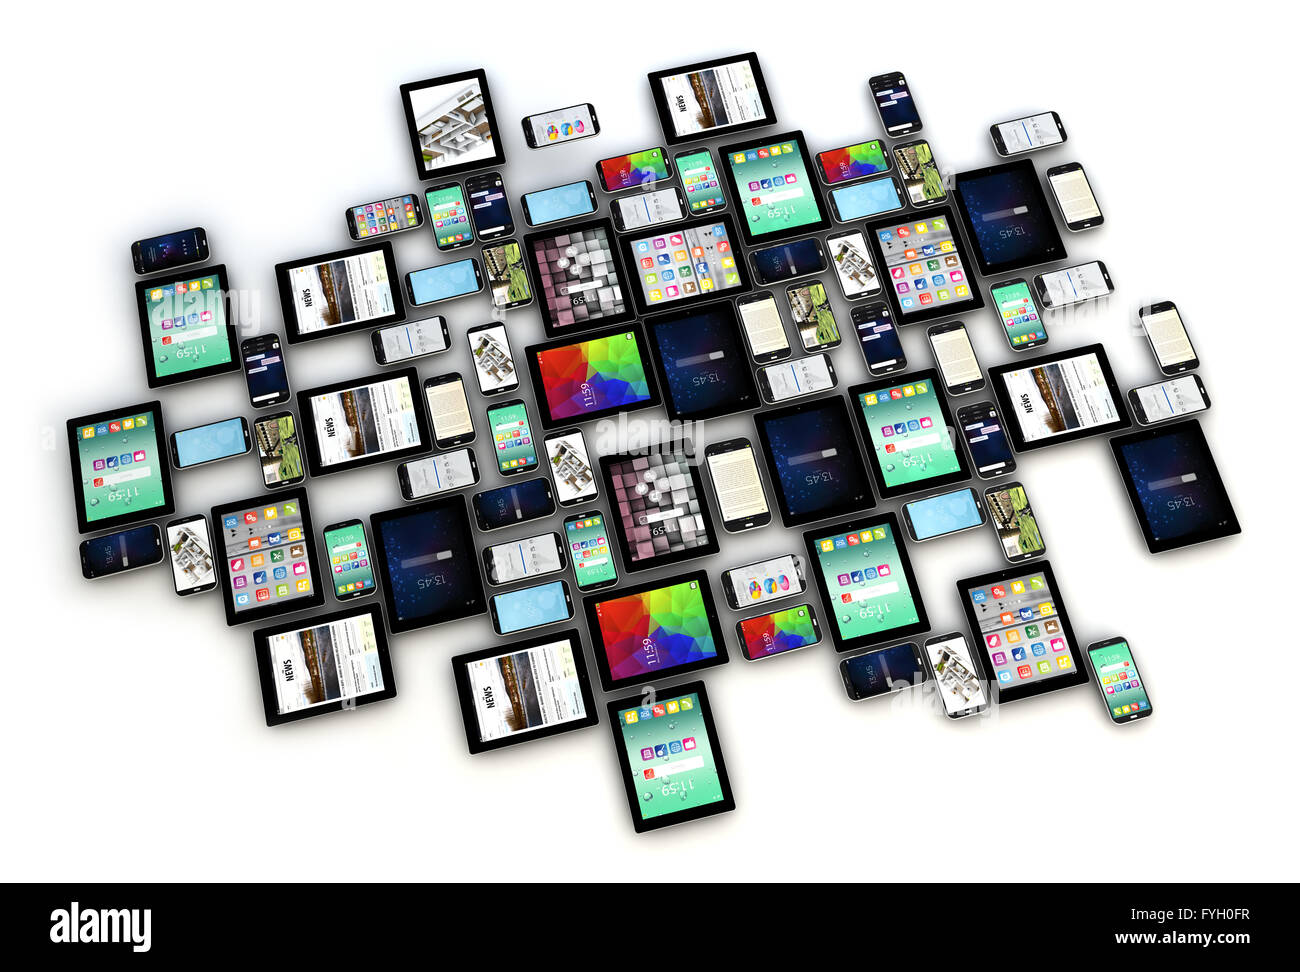 Render aus einer Sammlung von Smartphones und Tablets mit verschiedenen Bildschirmen isoliert auf weißem Hintergrund Stockfoto